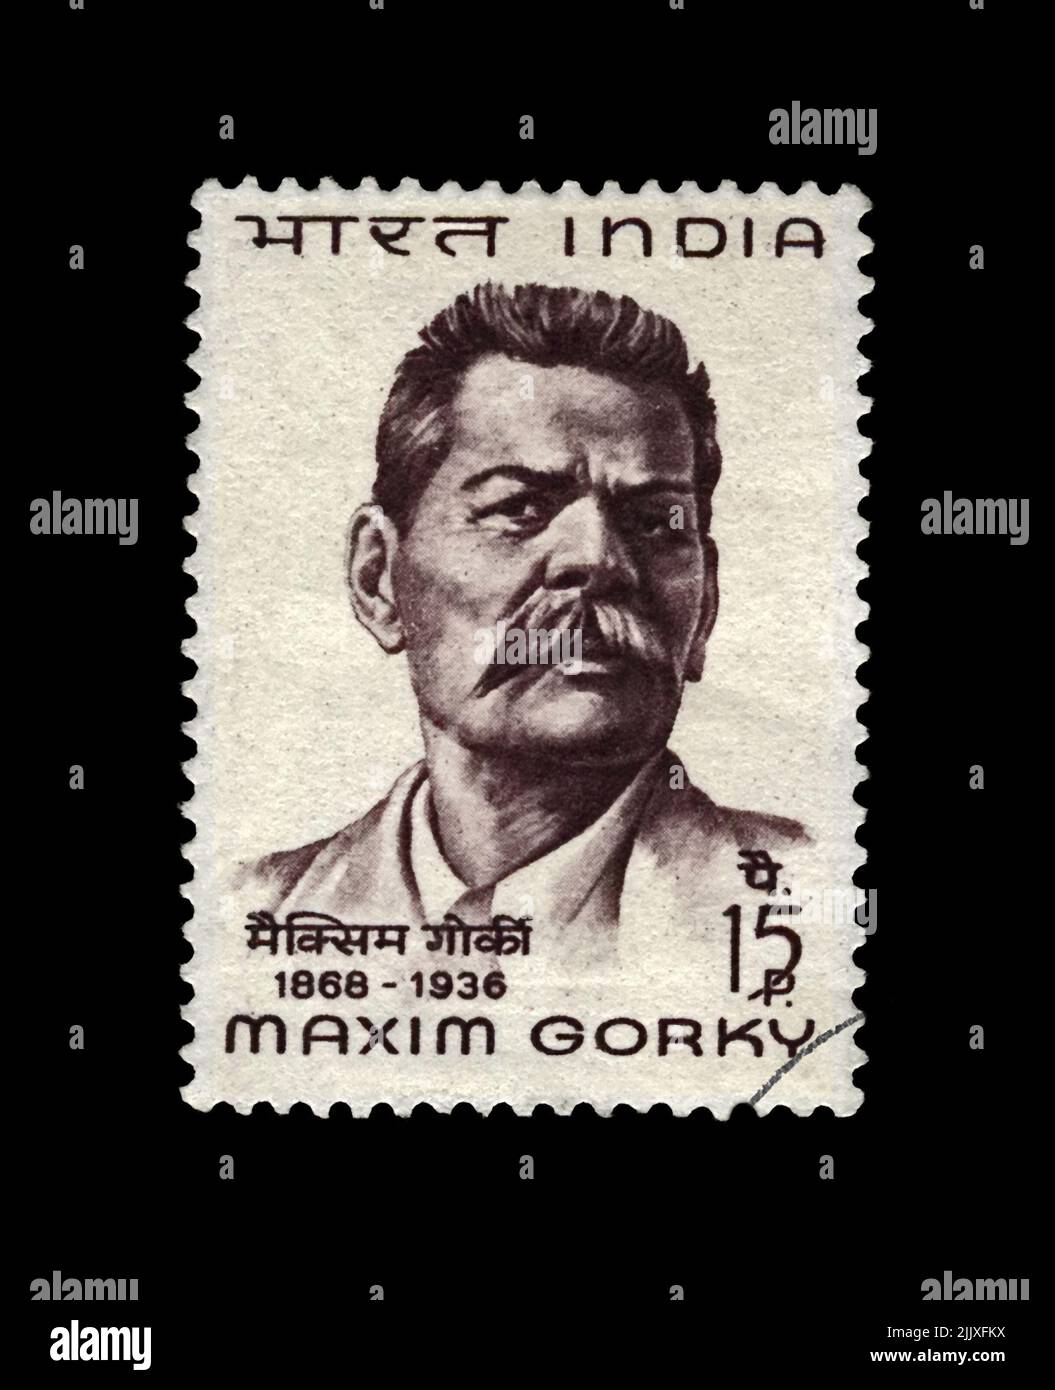 Maxim Gorky aka Alexei Peshkov (1868-1936), famoso scrittore russo, drammaturgo, politico, circa 1968. Francobollo cancellato stampato in India isolato Foto Stock